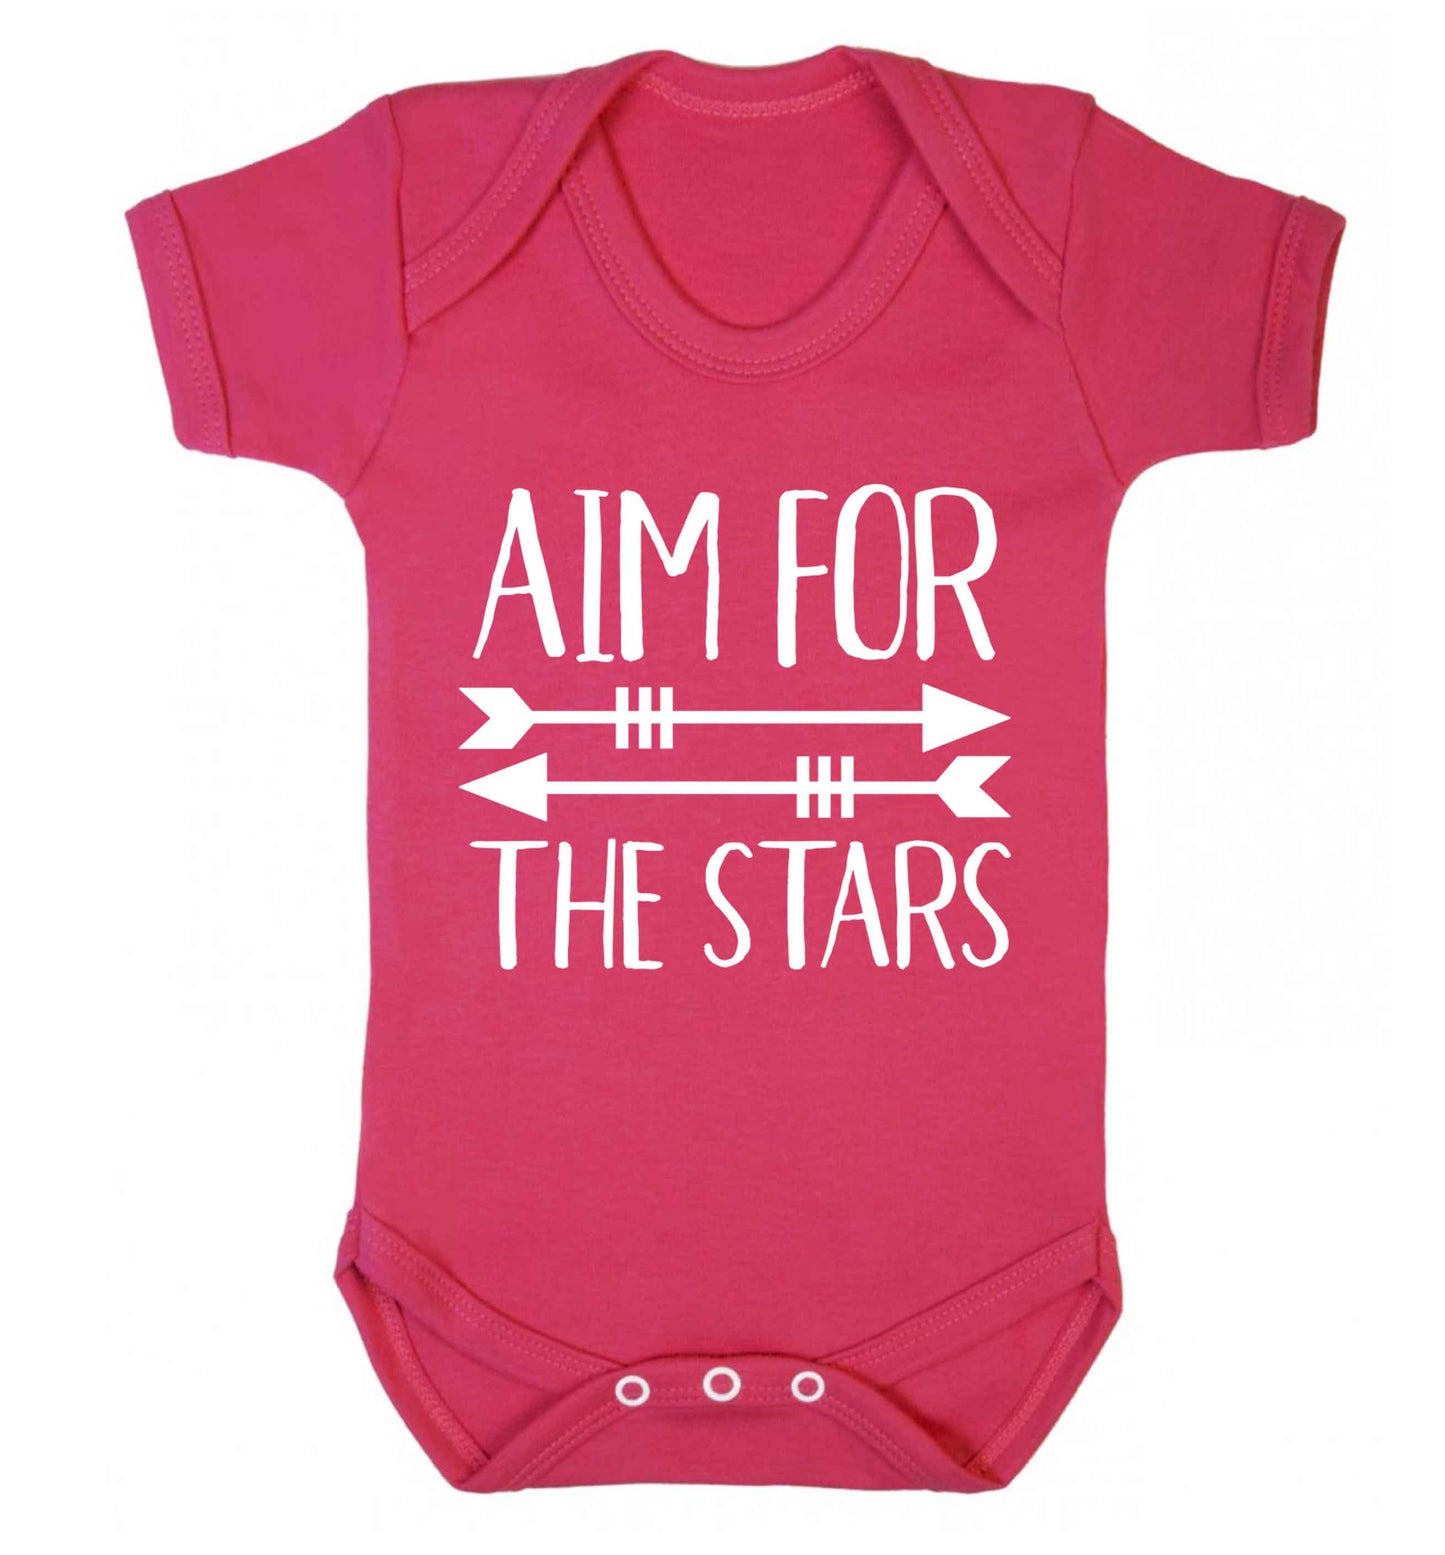 Aim for the stars Baby Vest dark pink 18-24 months